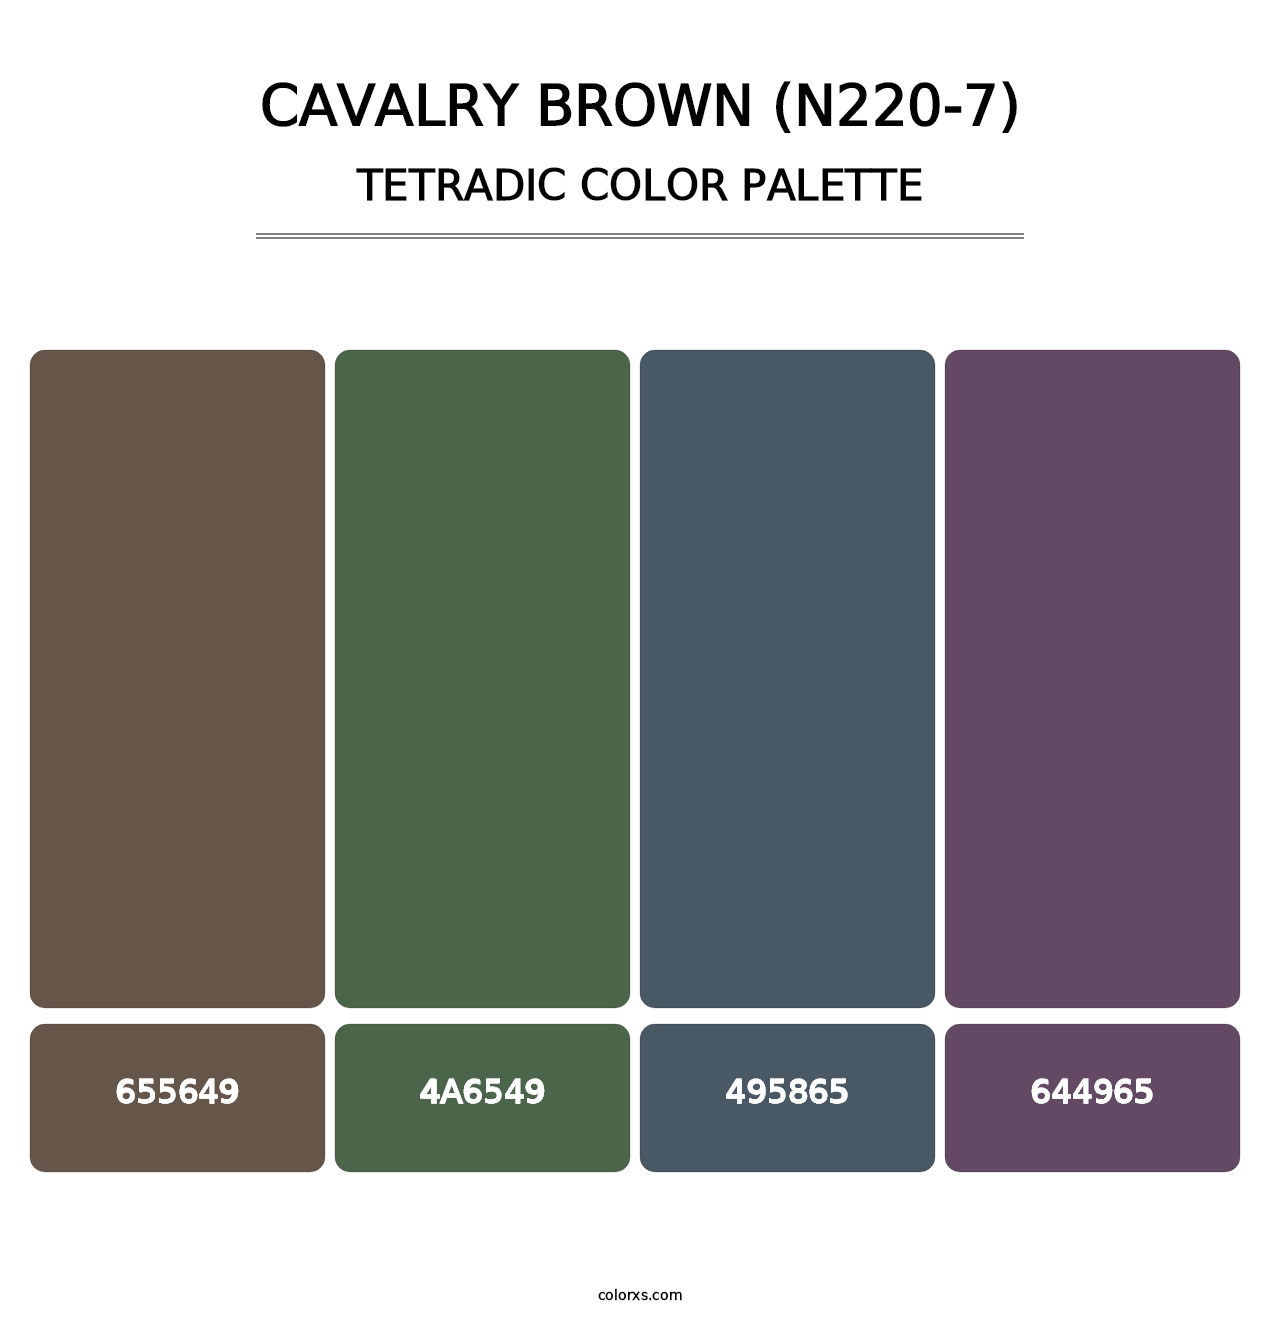 Cavalry Brown (N220-7) - Tetradic Color Palette